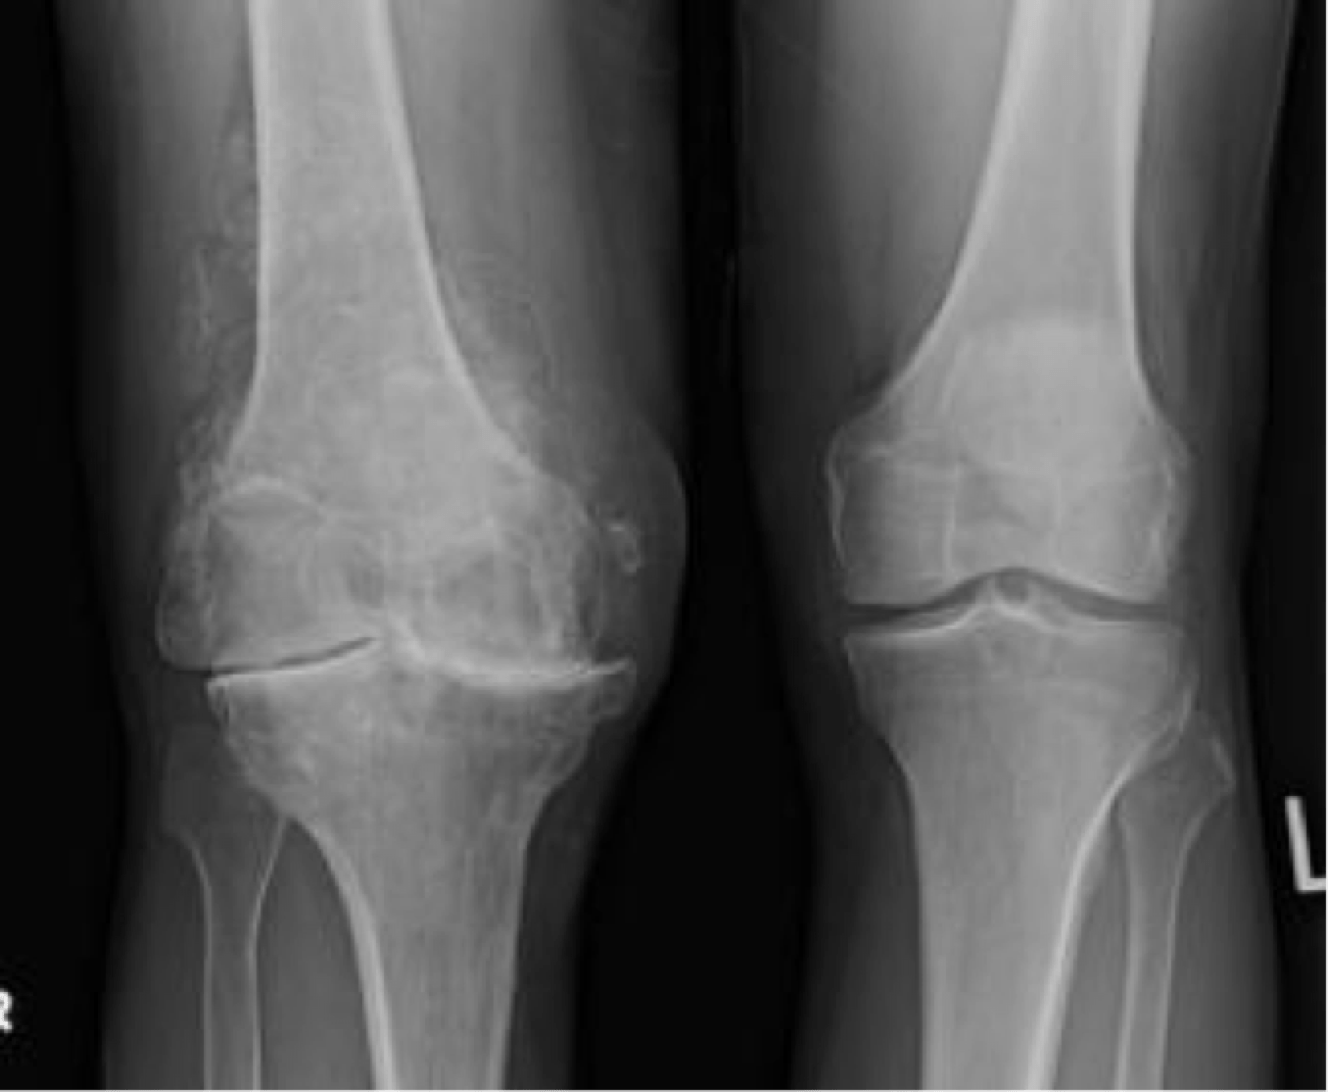 Гонартроз 4 степени коленного сустава рентген. Доа коленного сустава на рентгене. Деформирующий остеоартроз рентген. Деформирующий артроз (остеоартроз). Артроз коленного сустава название